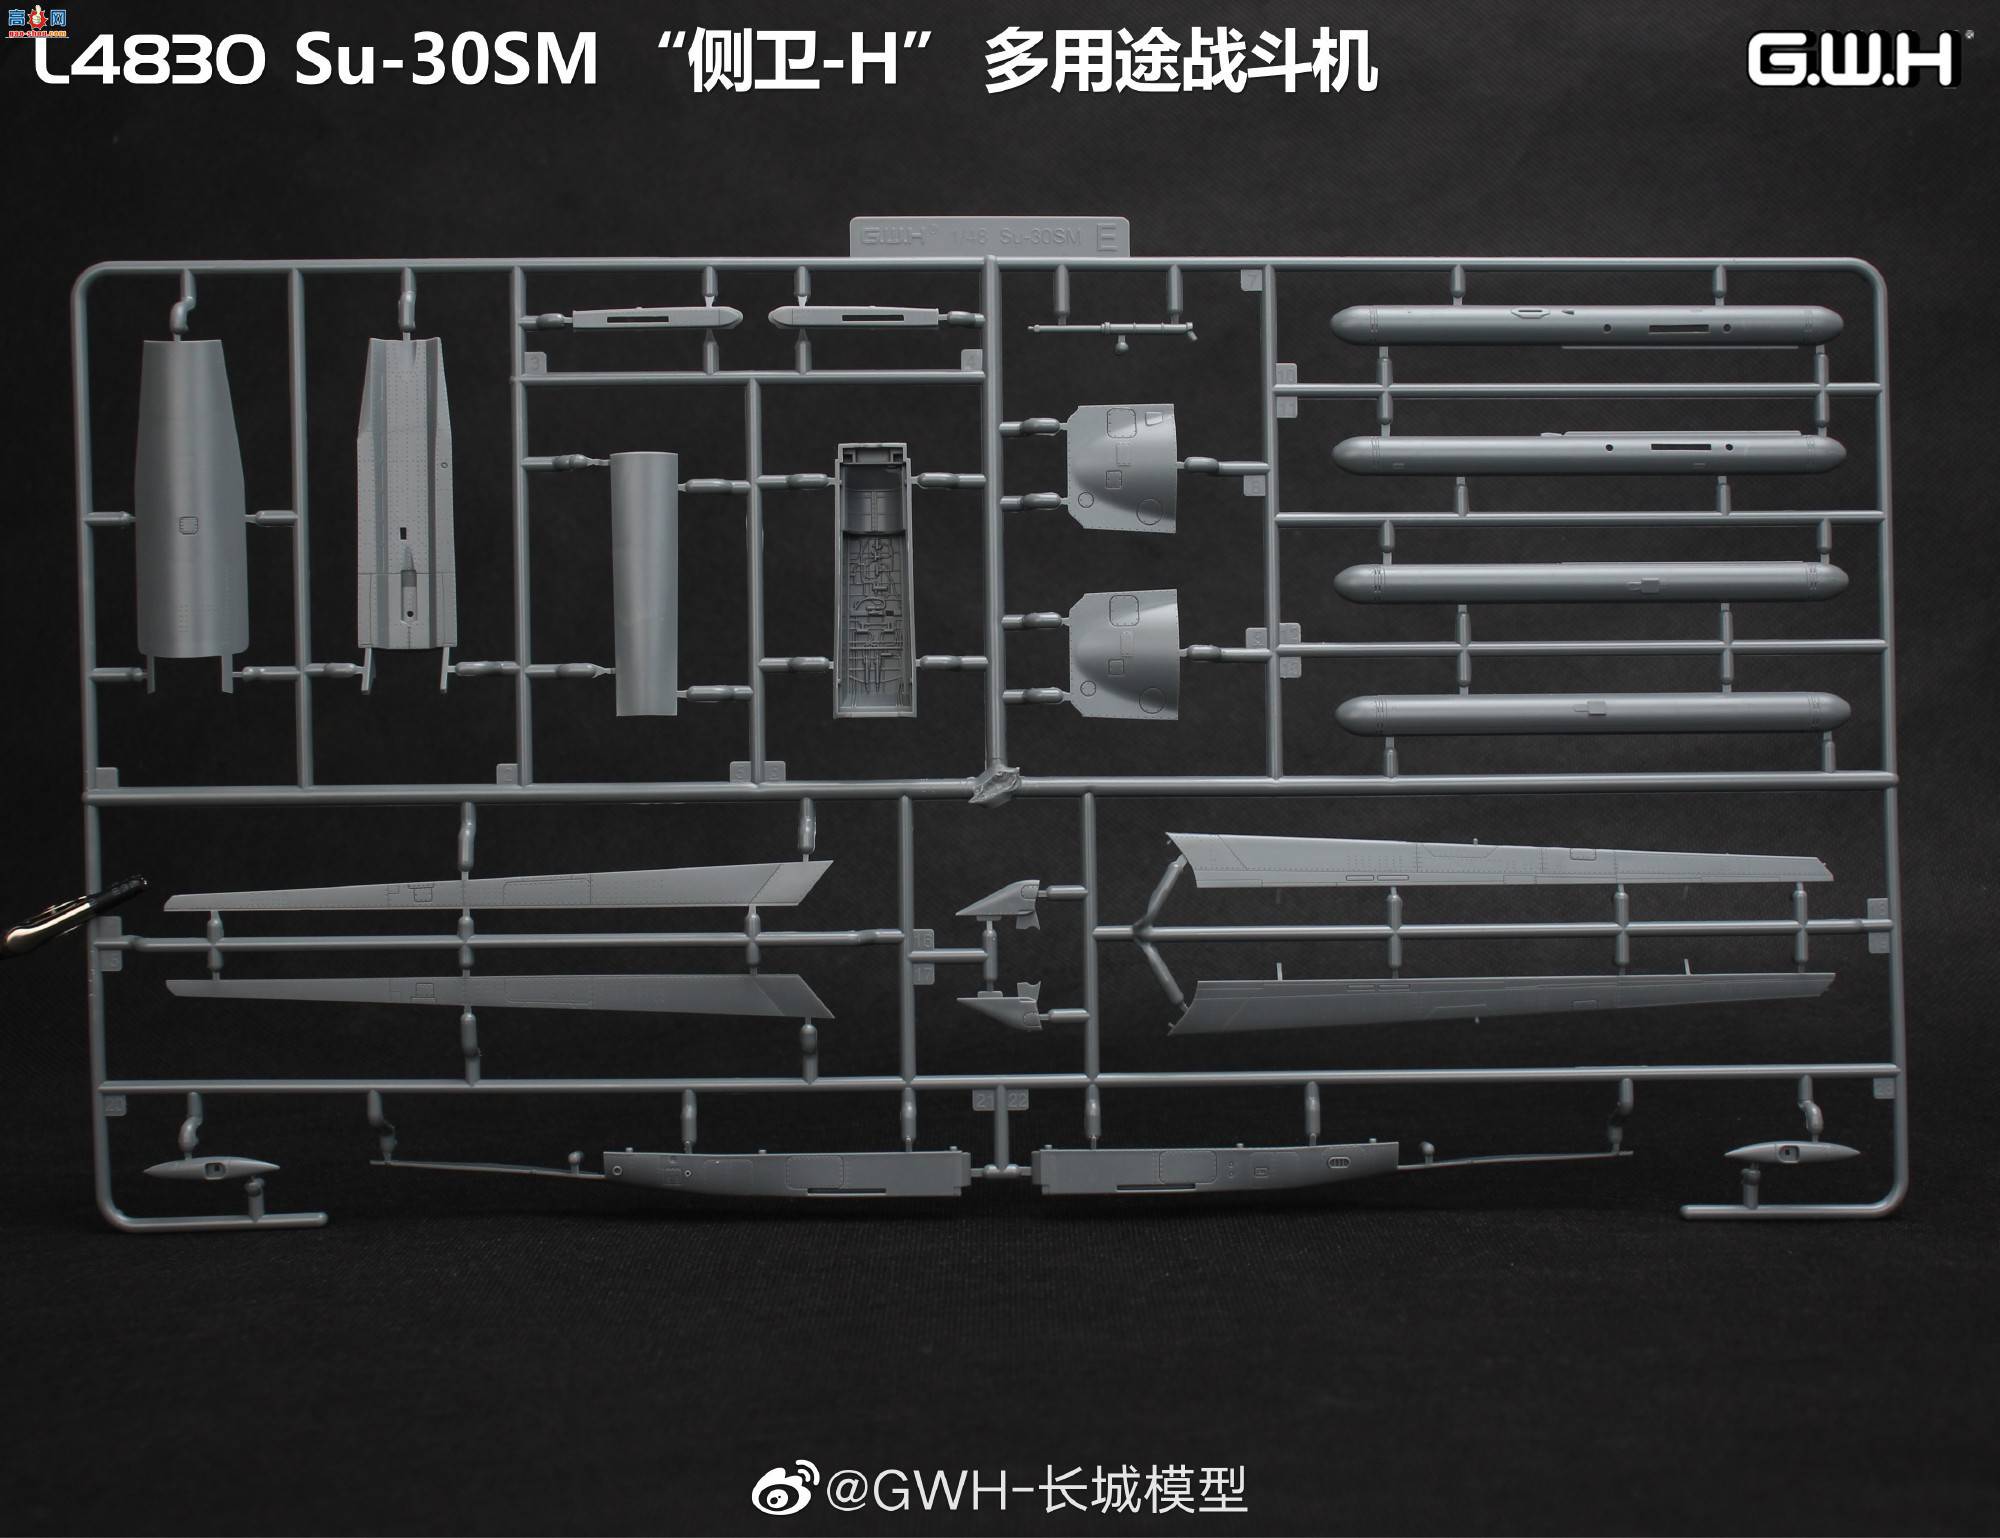 【长城新品】L4830 Su-30SM “侧卫-H” 多用途战斗机板件图